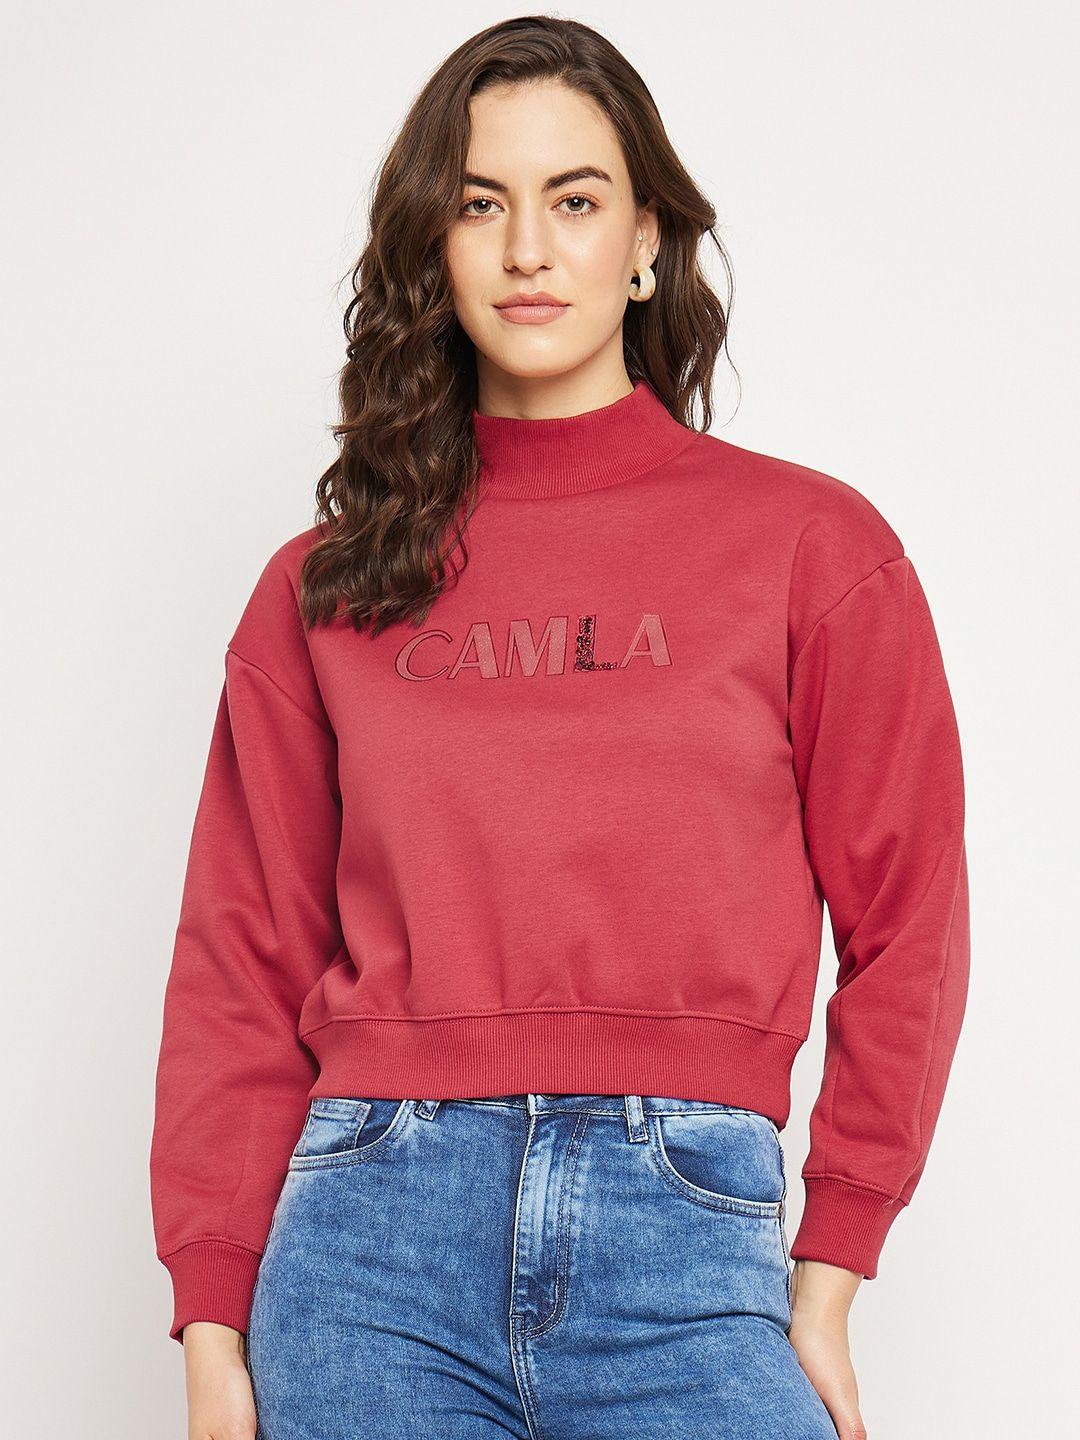 camla typography printed cotton pullover crop sweatshirt